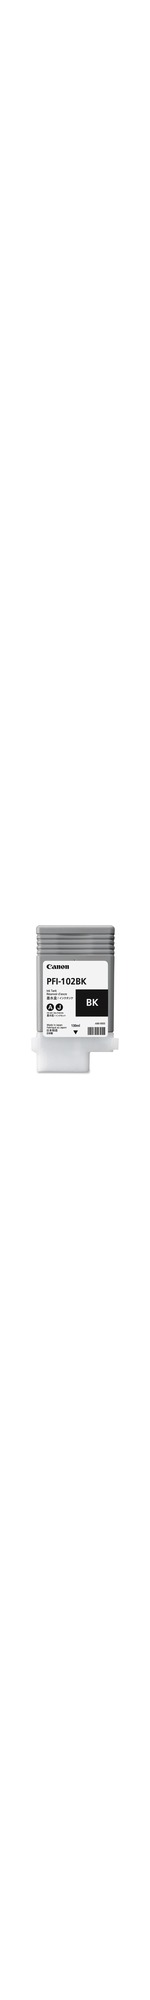 Canon 0895B001AA Ink Cartridge - Black